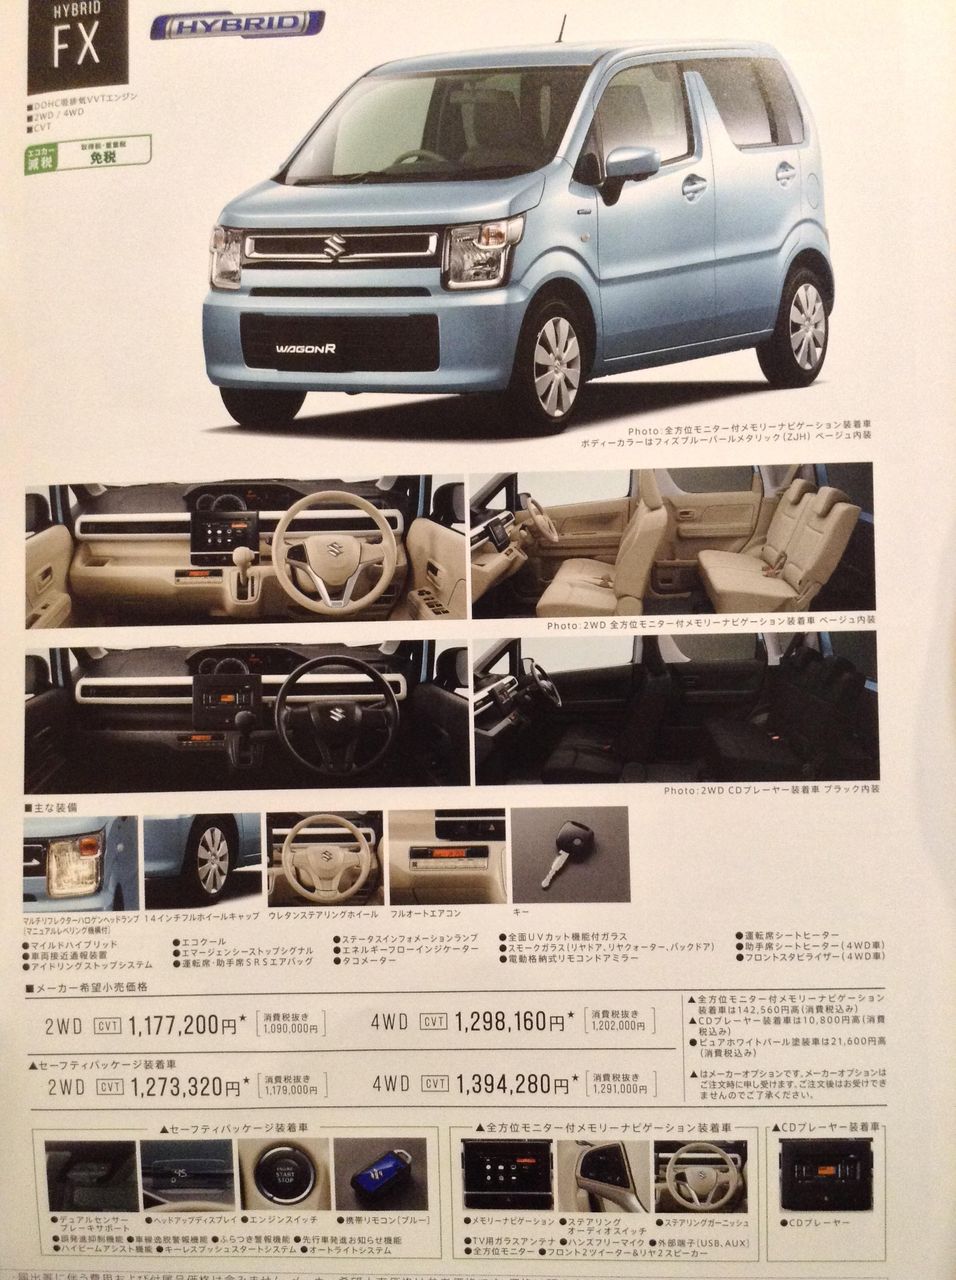 Next-gen-Suzuki-Wagon-R-brochure-leaked